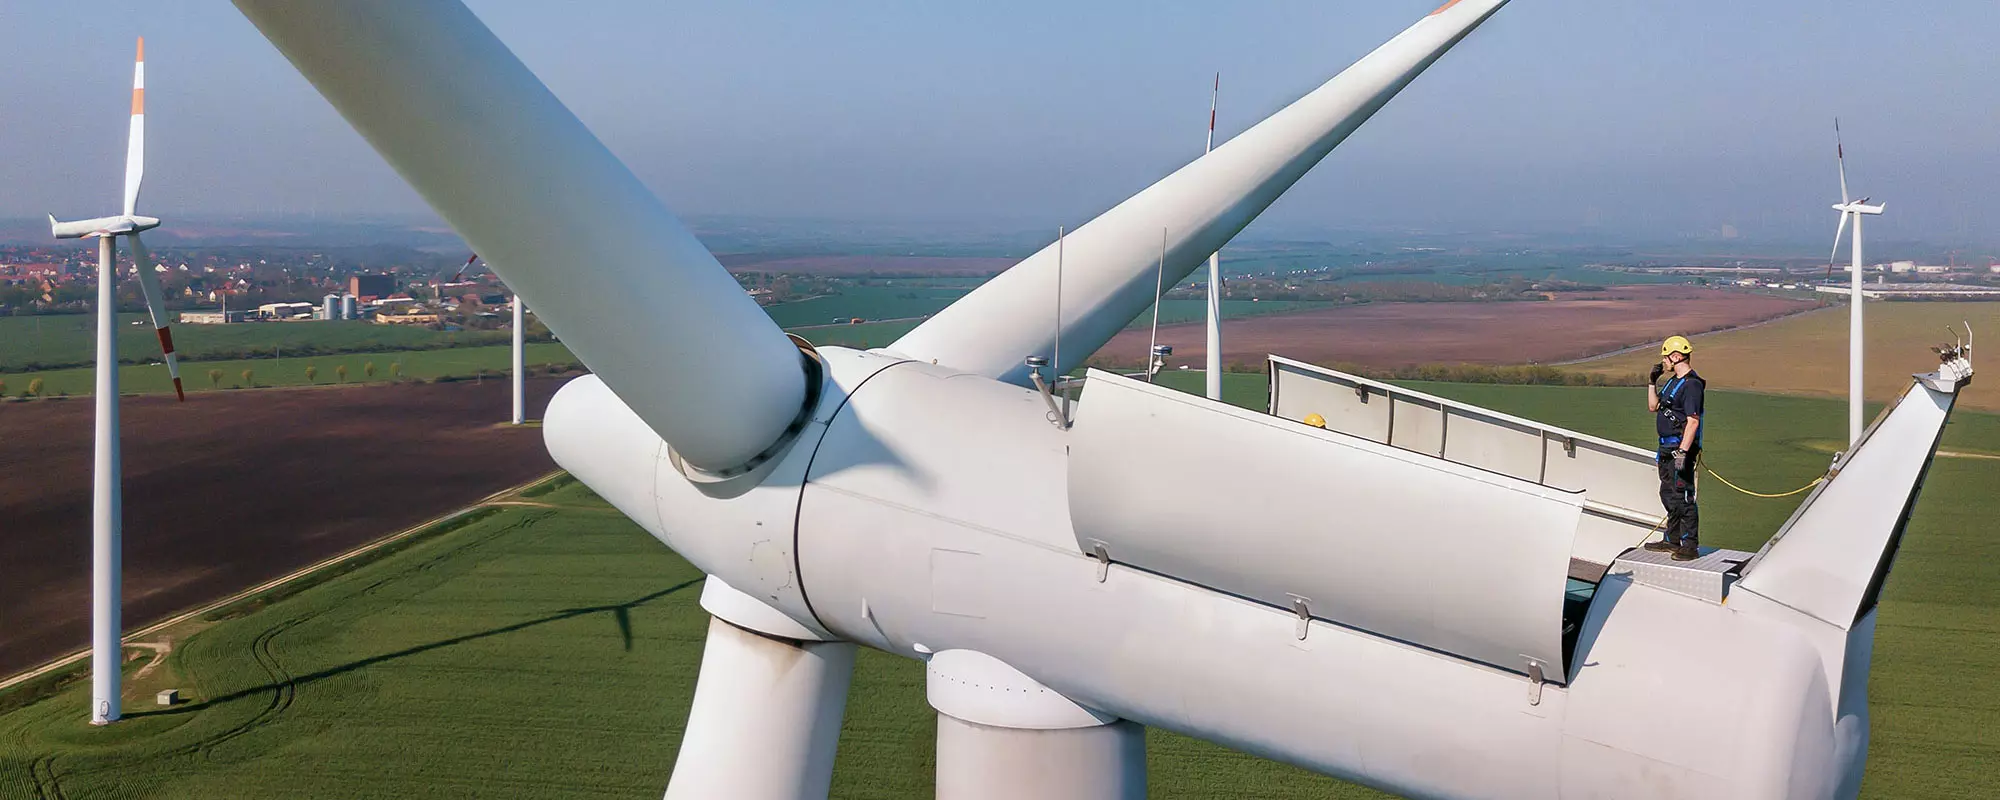 Electricians as Wind Turbine Technician